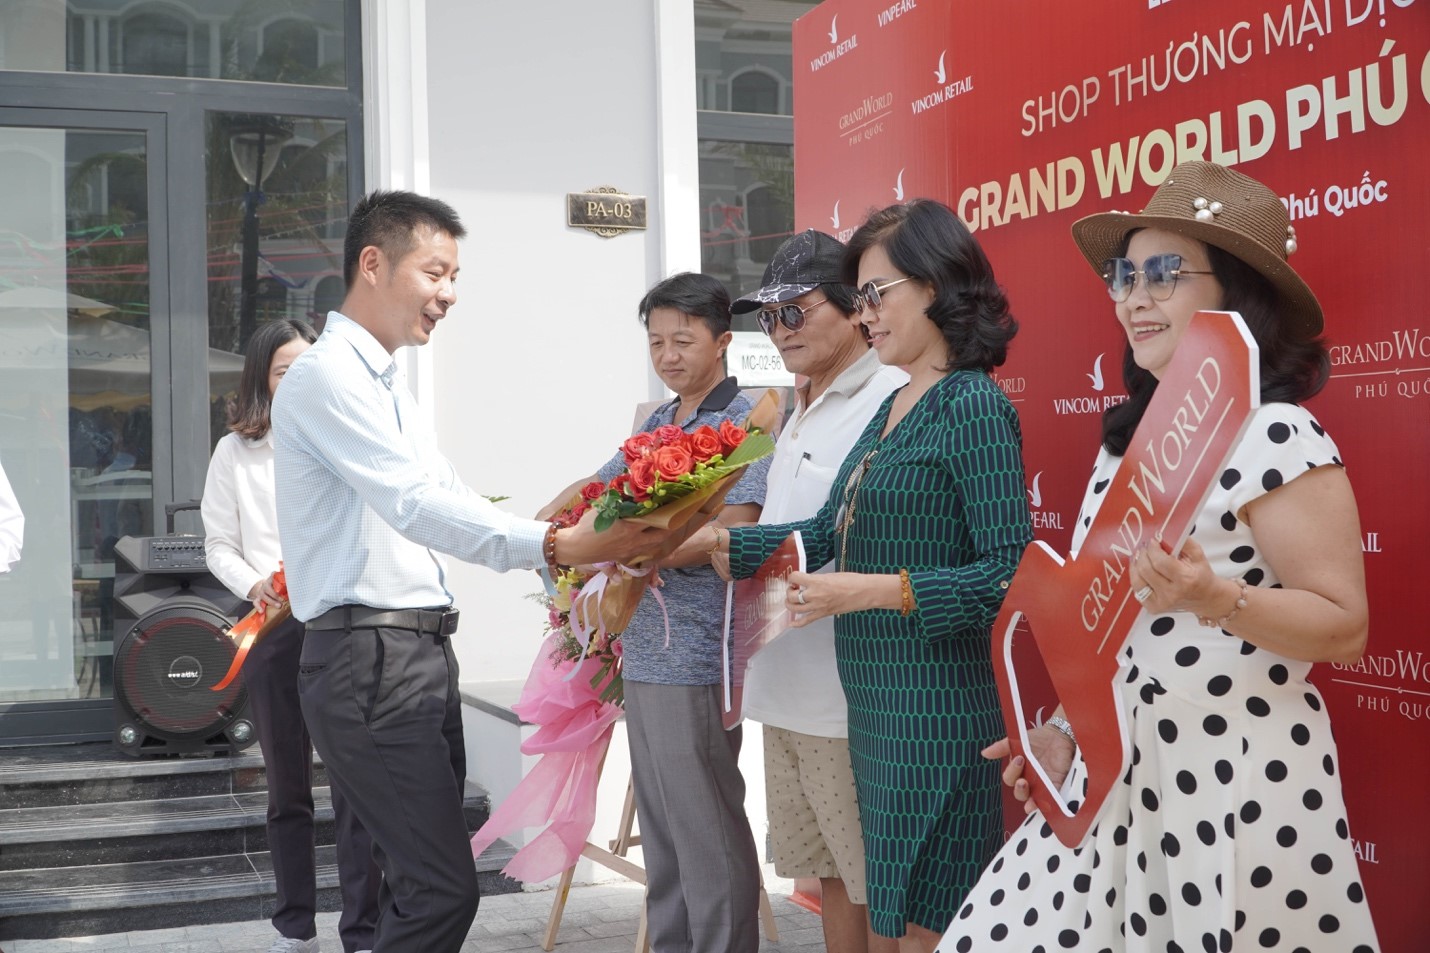 Với tiến độ thi công thần tốc, không chỉ shop thương mại Vincom mà nhiều hạng mục khác của Grand World Phú Quốc cũng sẽ “về đích sớm” để bàn giao cho nhà đầu tư.